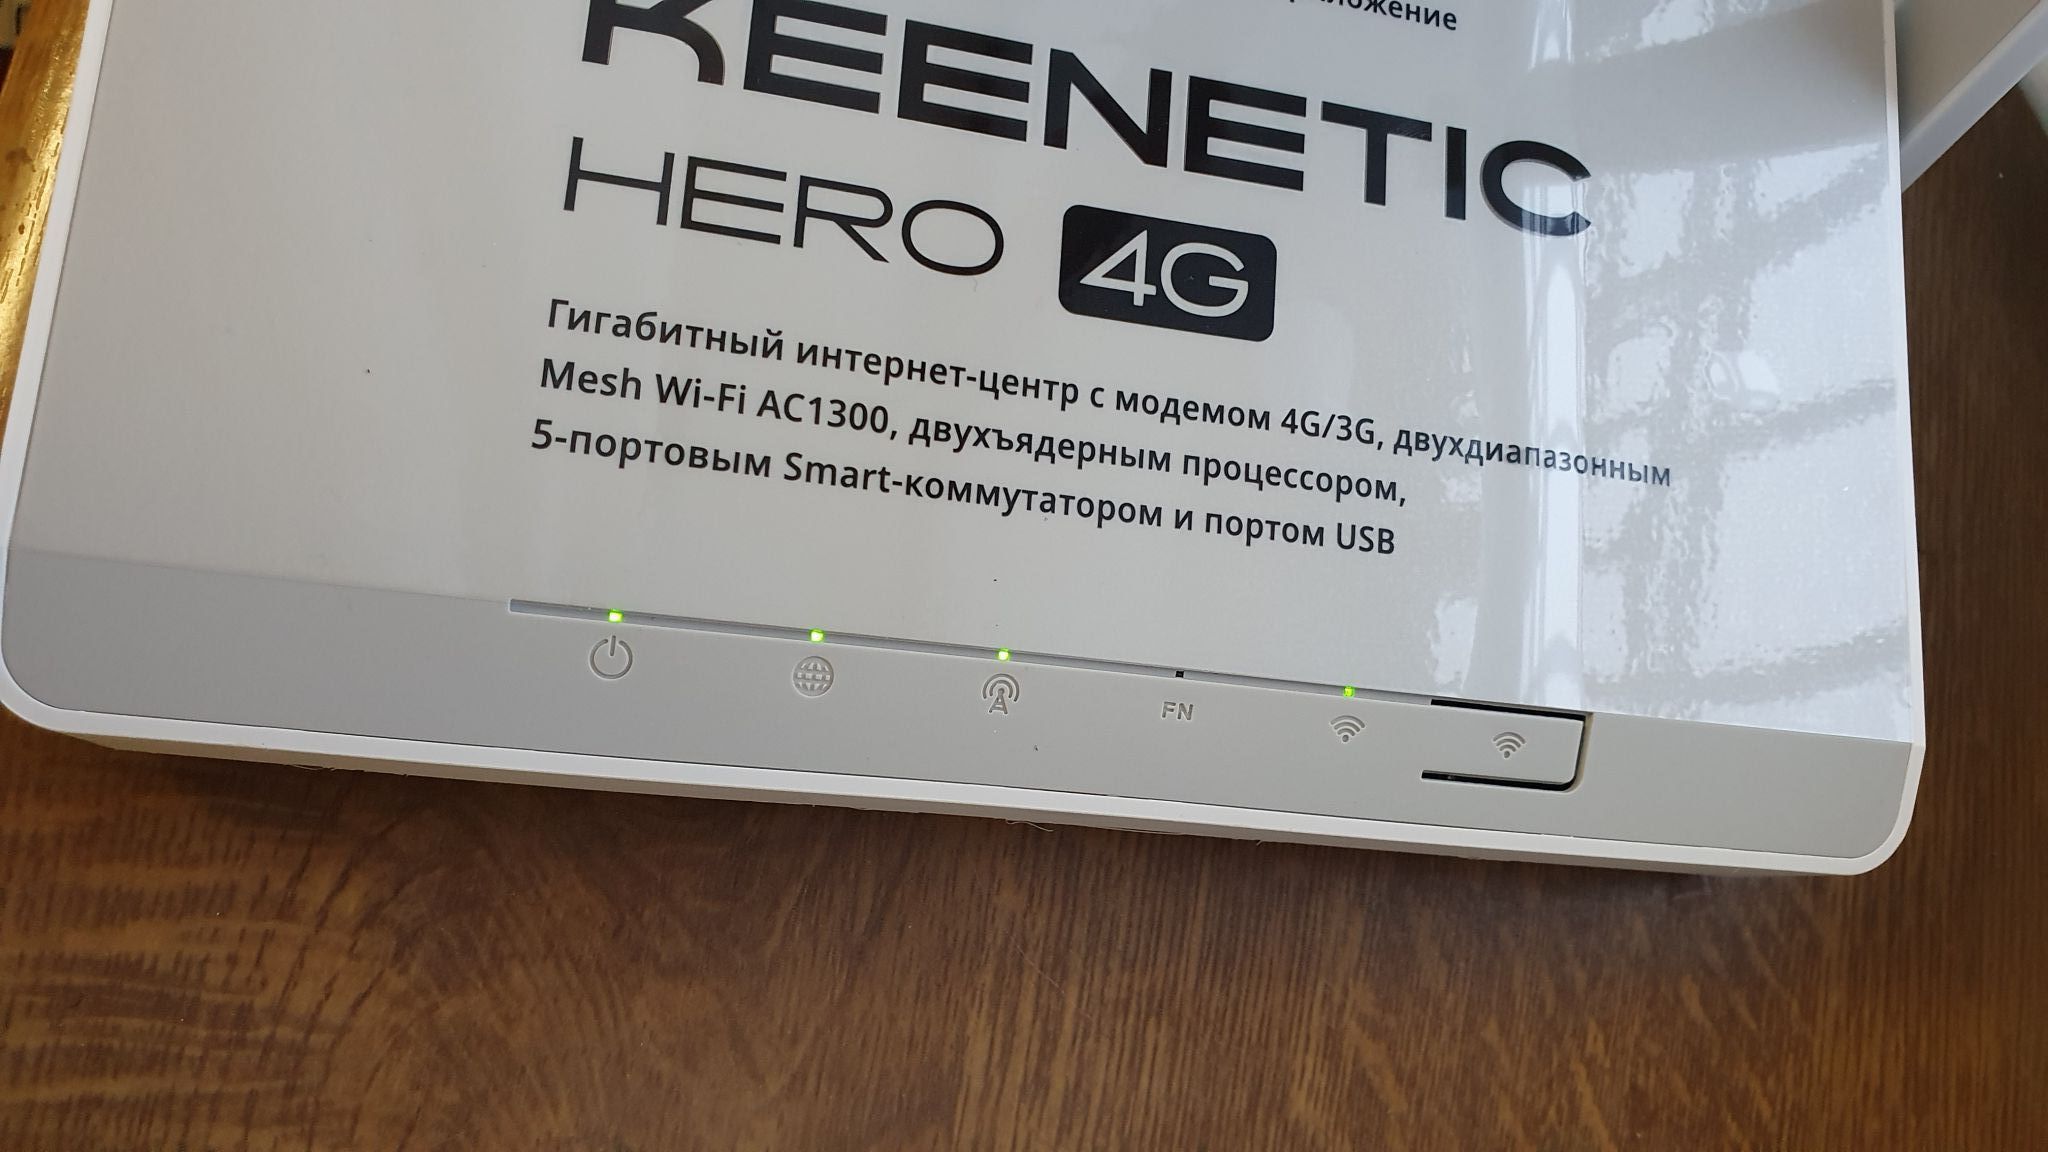 Keenetic 4g 2310